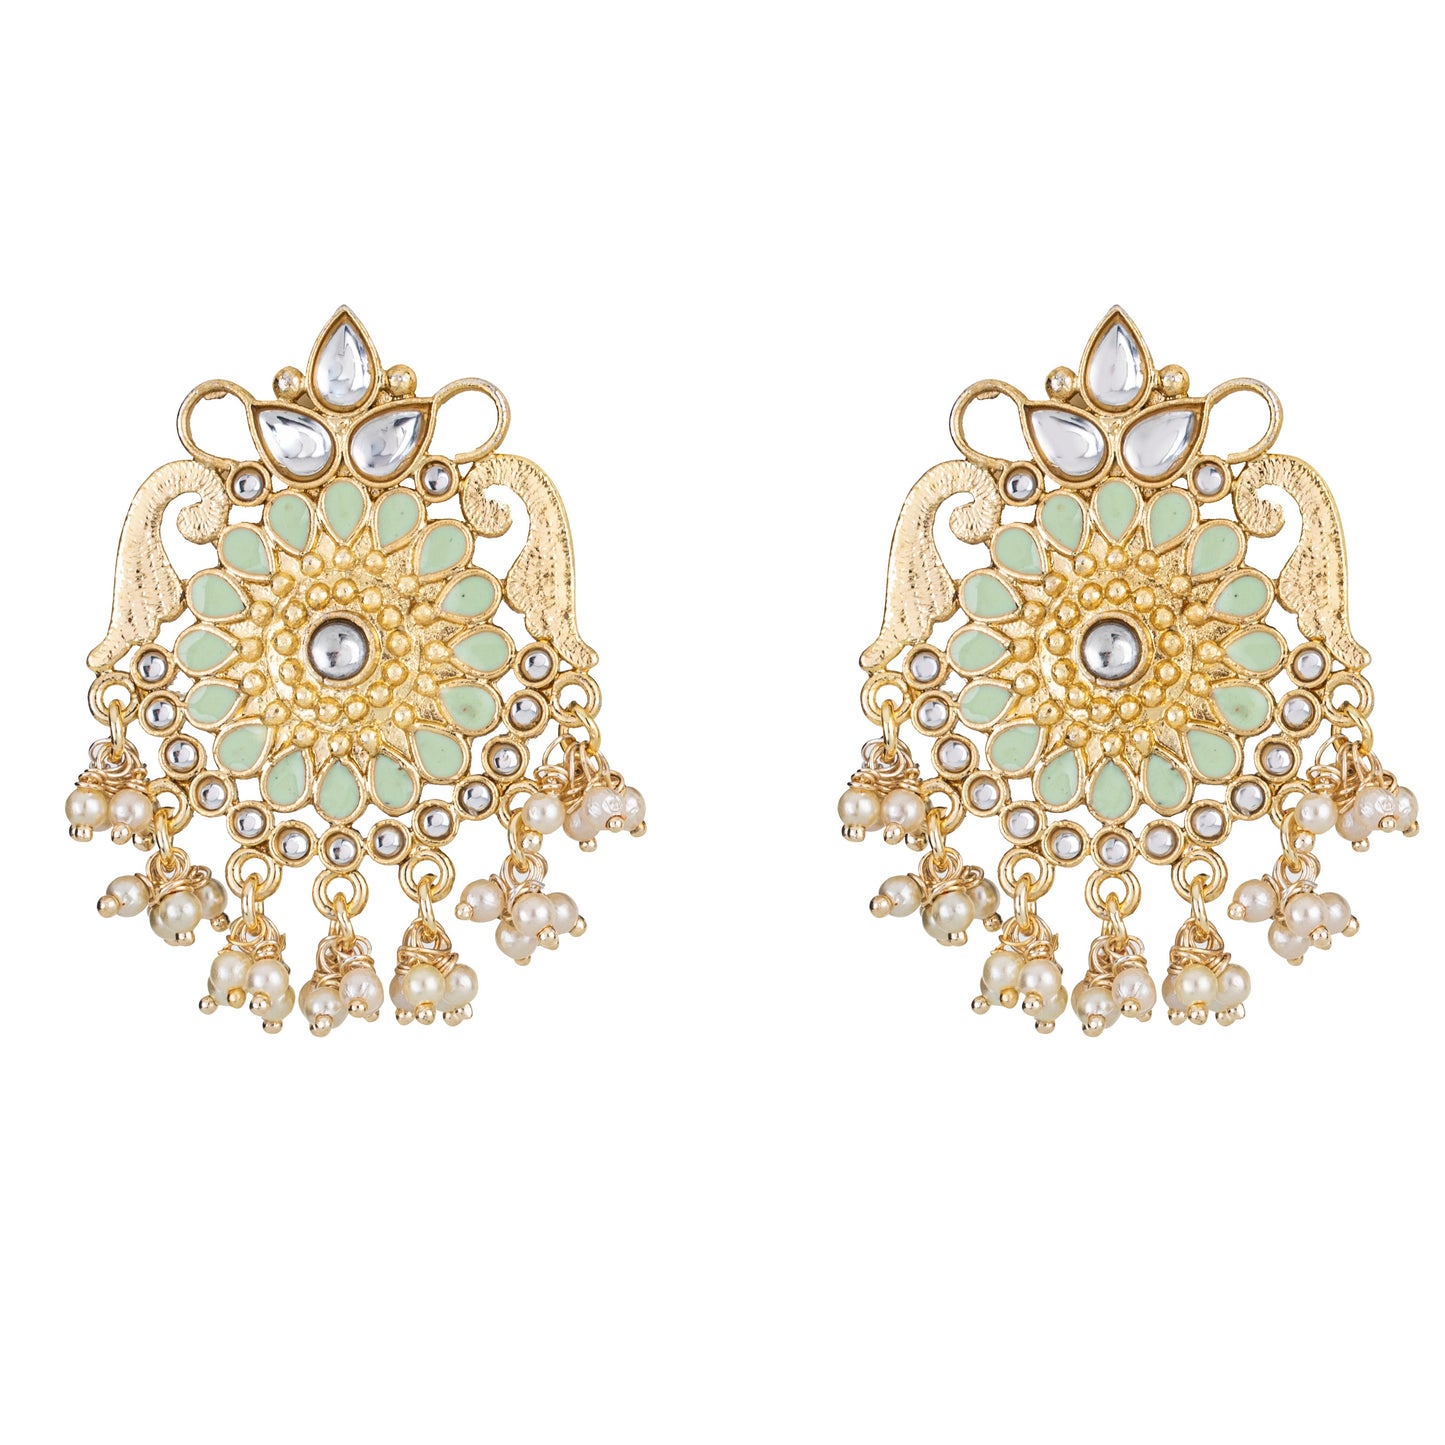 Bdiva 18K Gold Plated Green Kundan Meenakari Earrings with Semi Cultured Pearls.